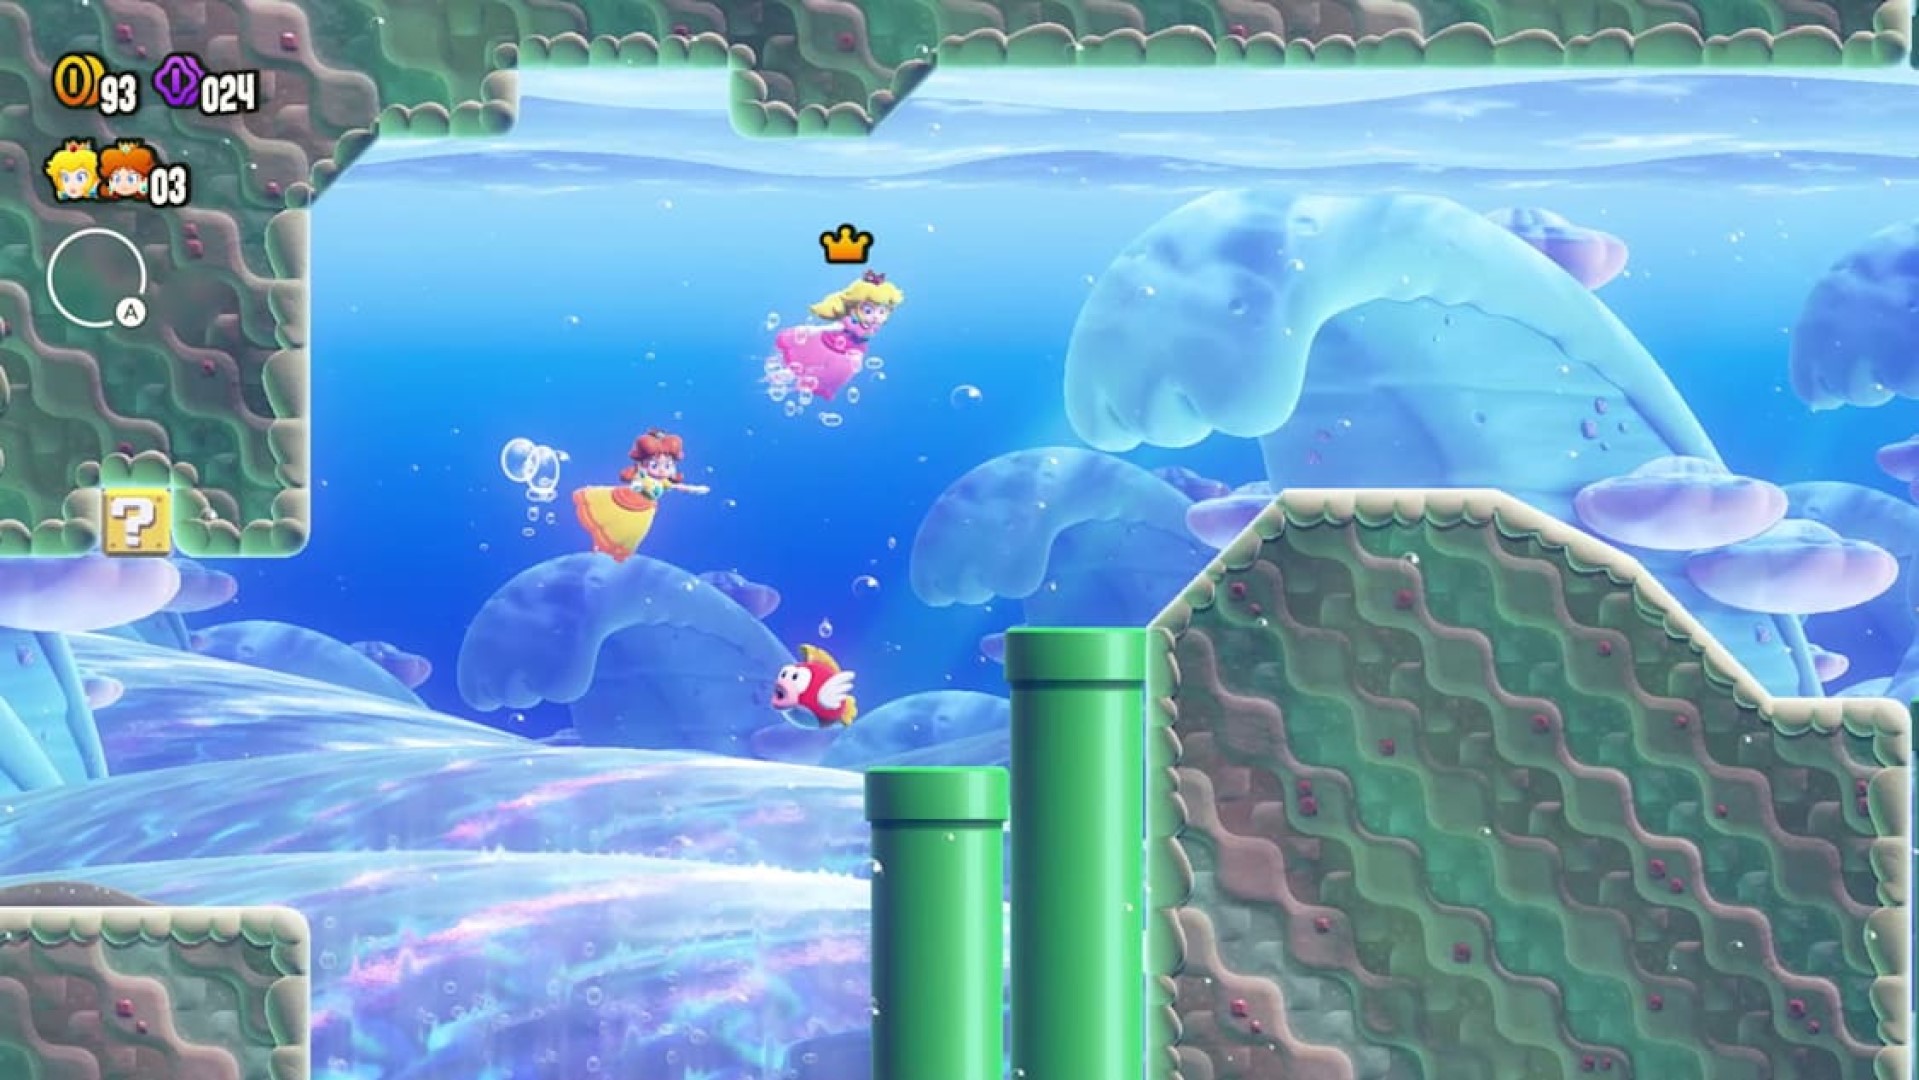 Our 10 favorite Super Mario Bros. Wonder flower effects